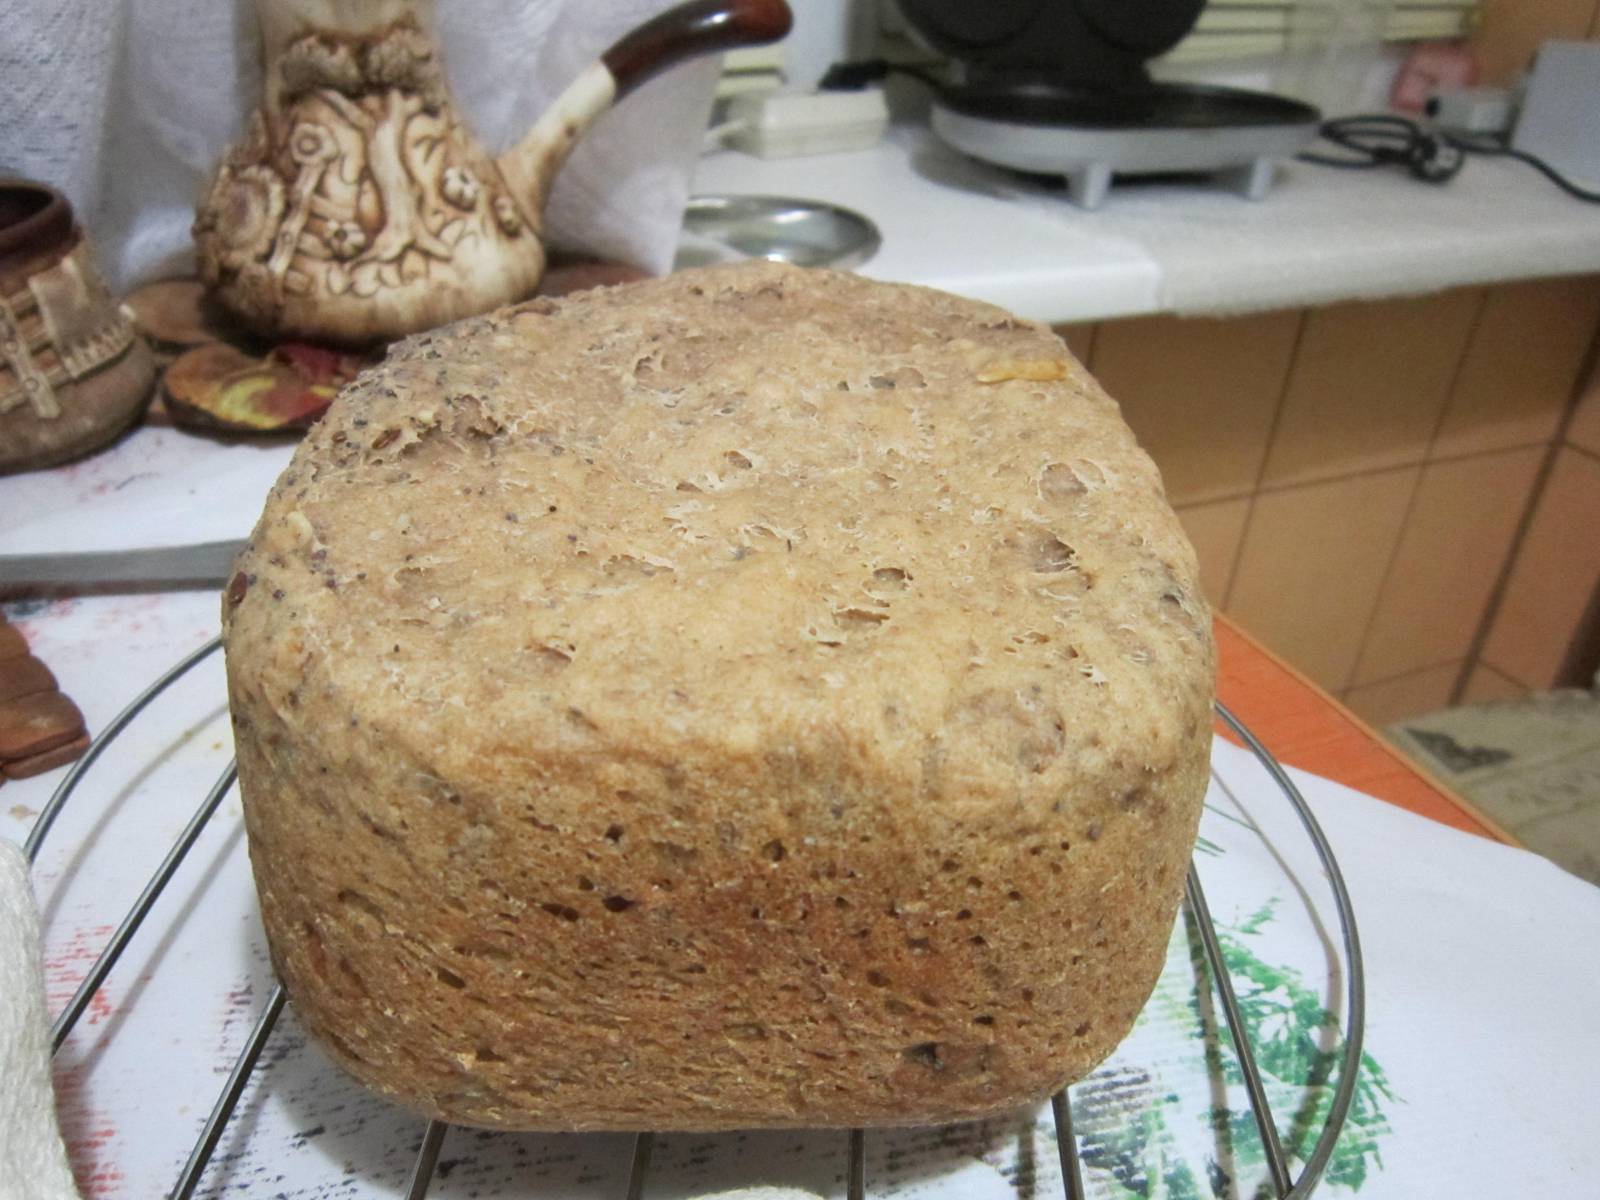 Pan de trigo sarraceno con semillas de amapola, semillas de lino, nueces